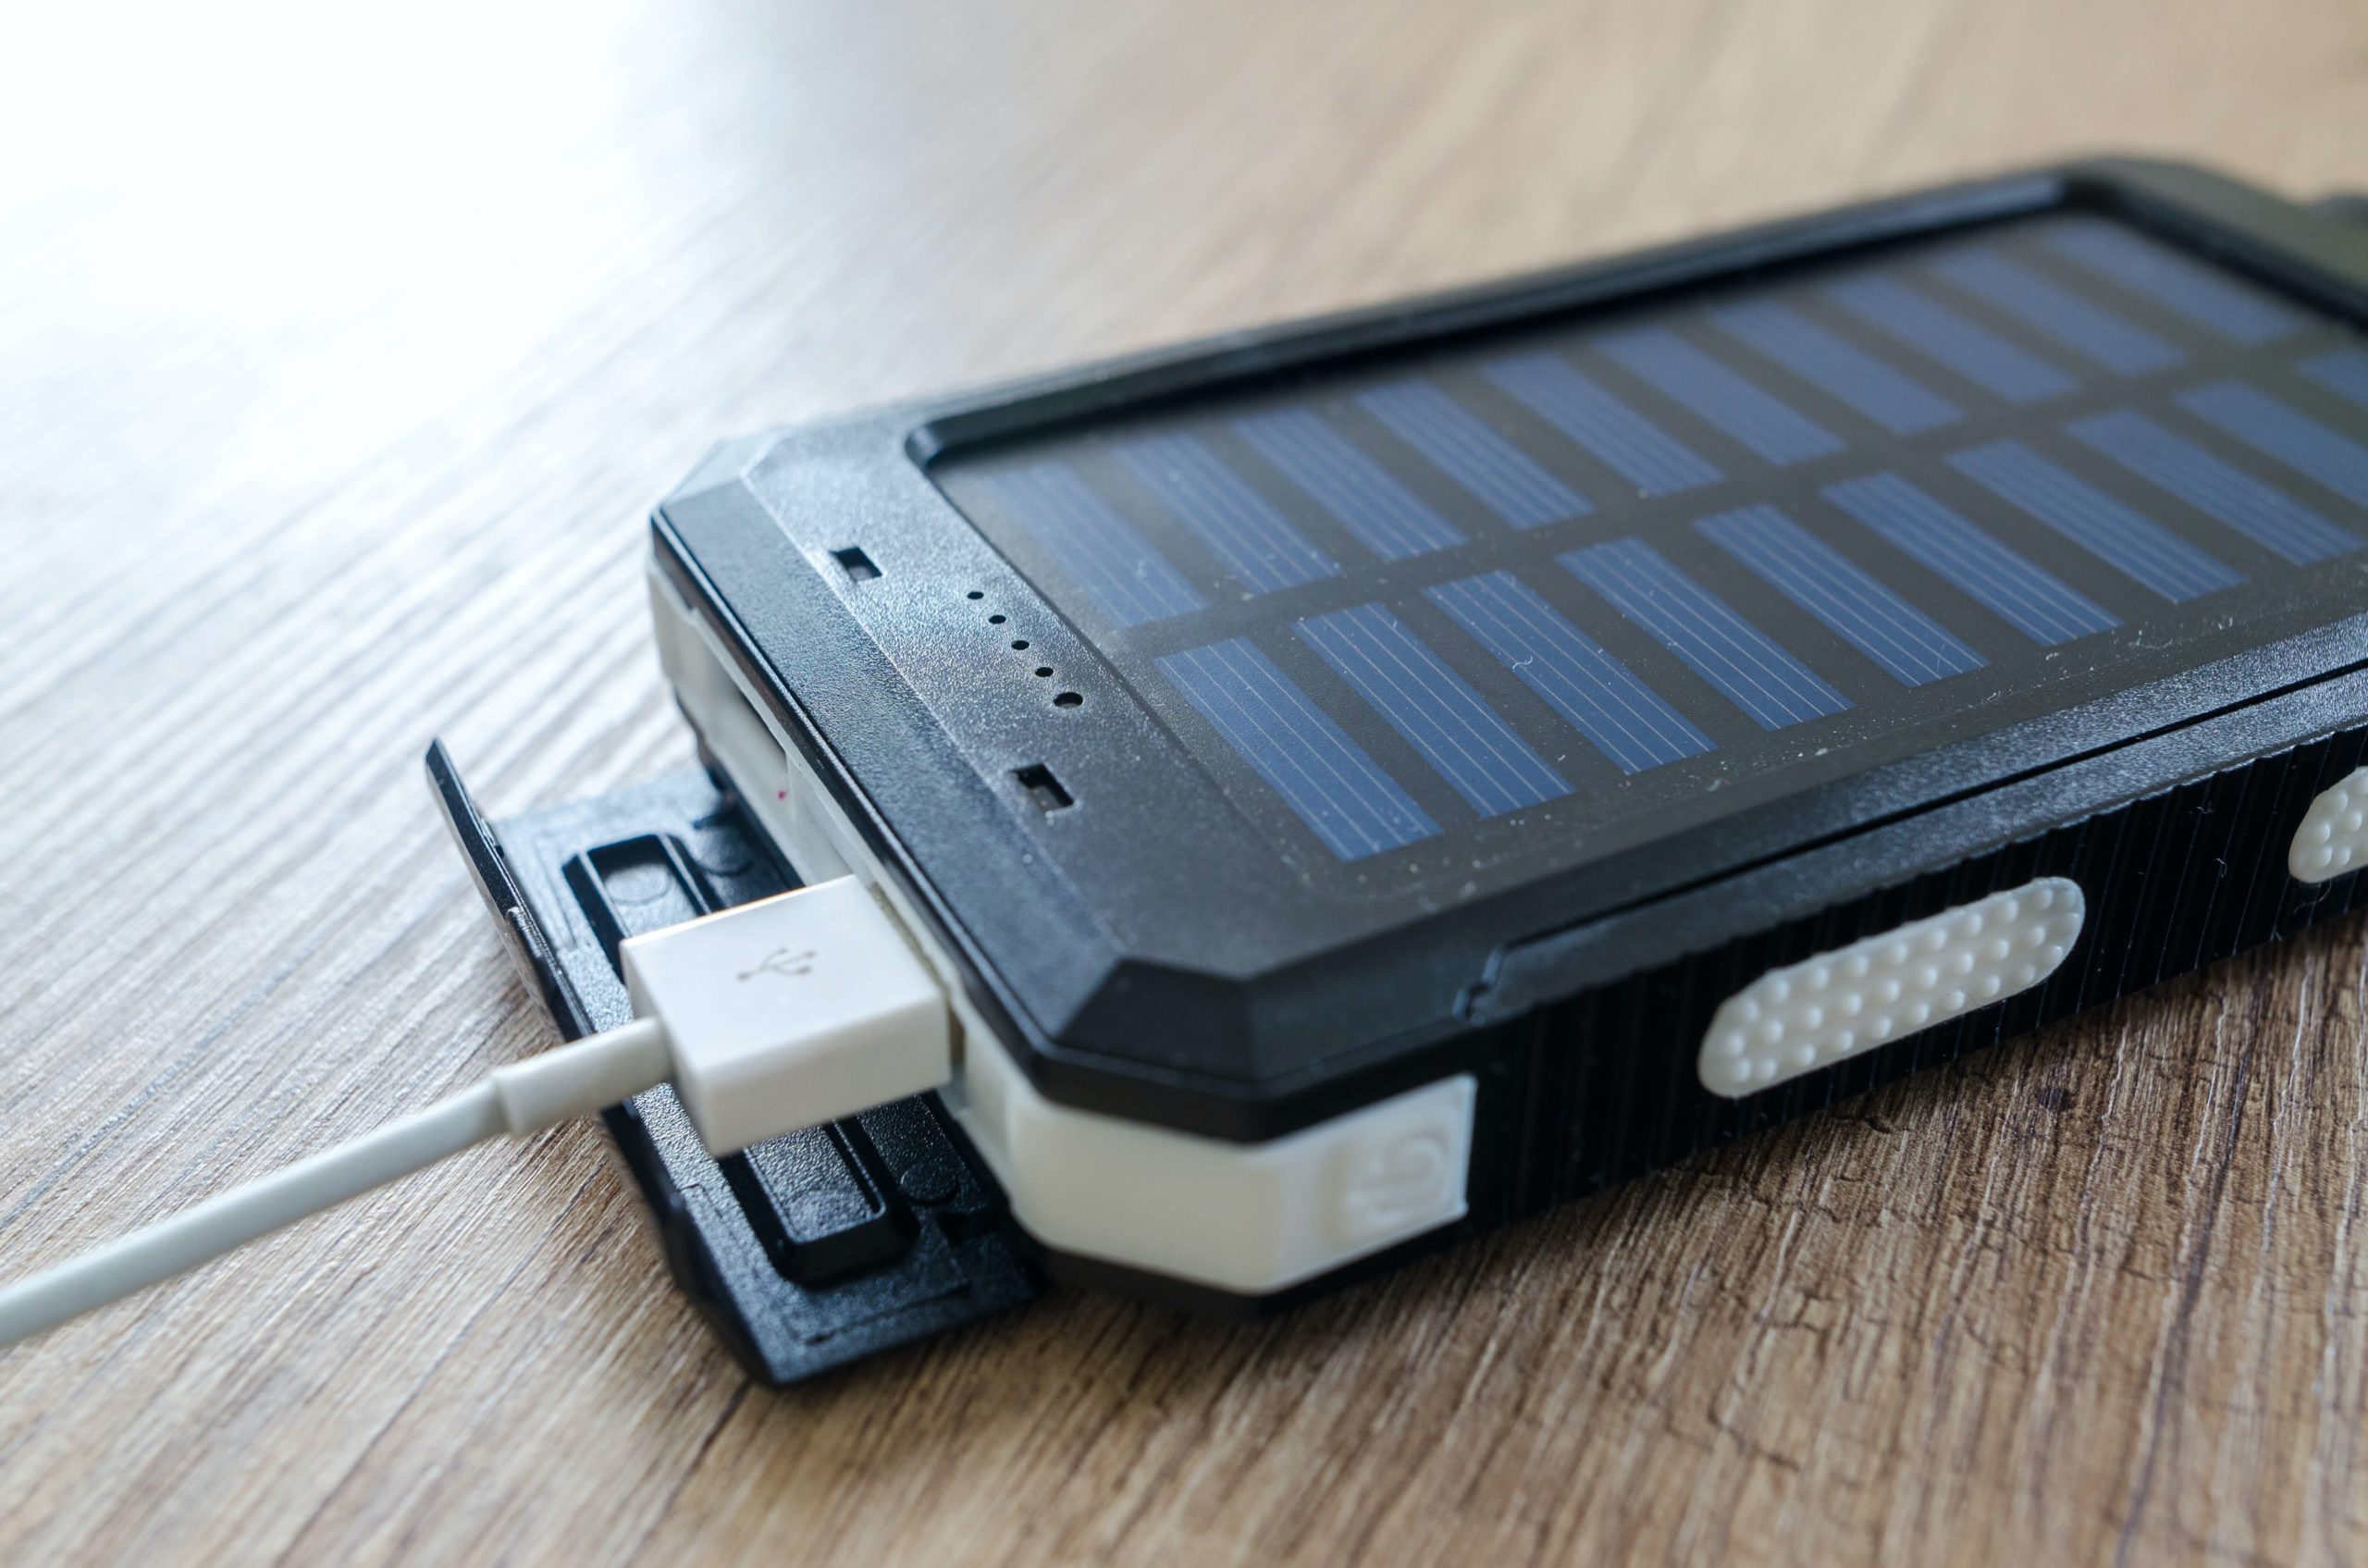 Crearon un cargador portátil para celular que funciona con luz solar